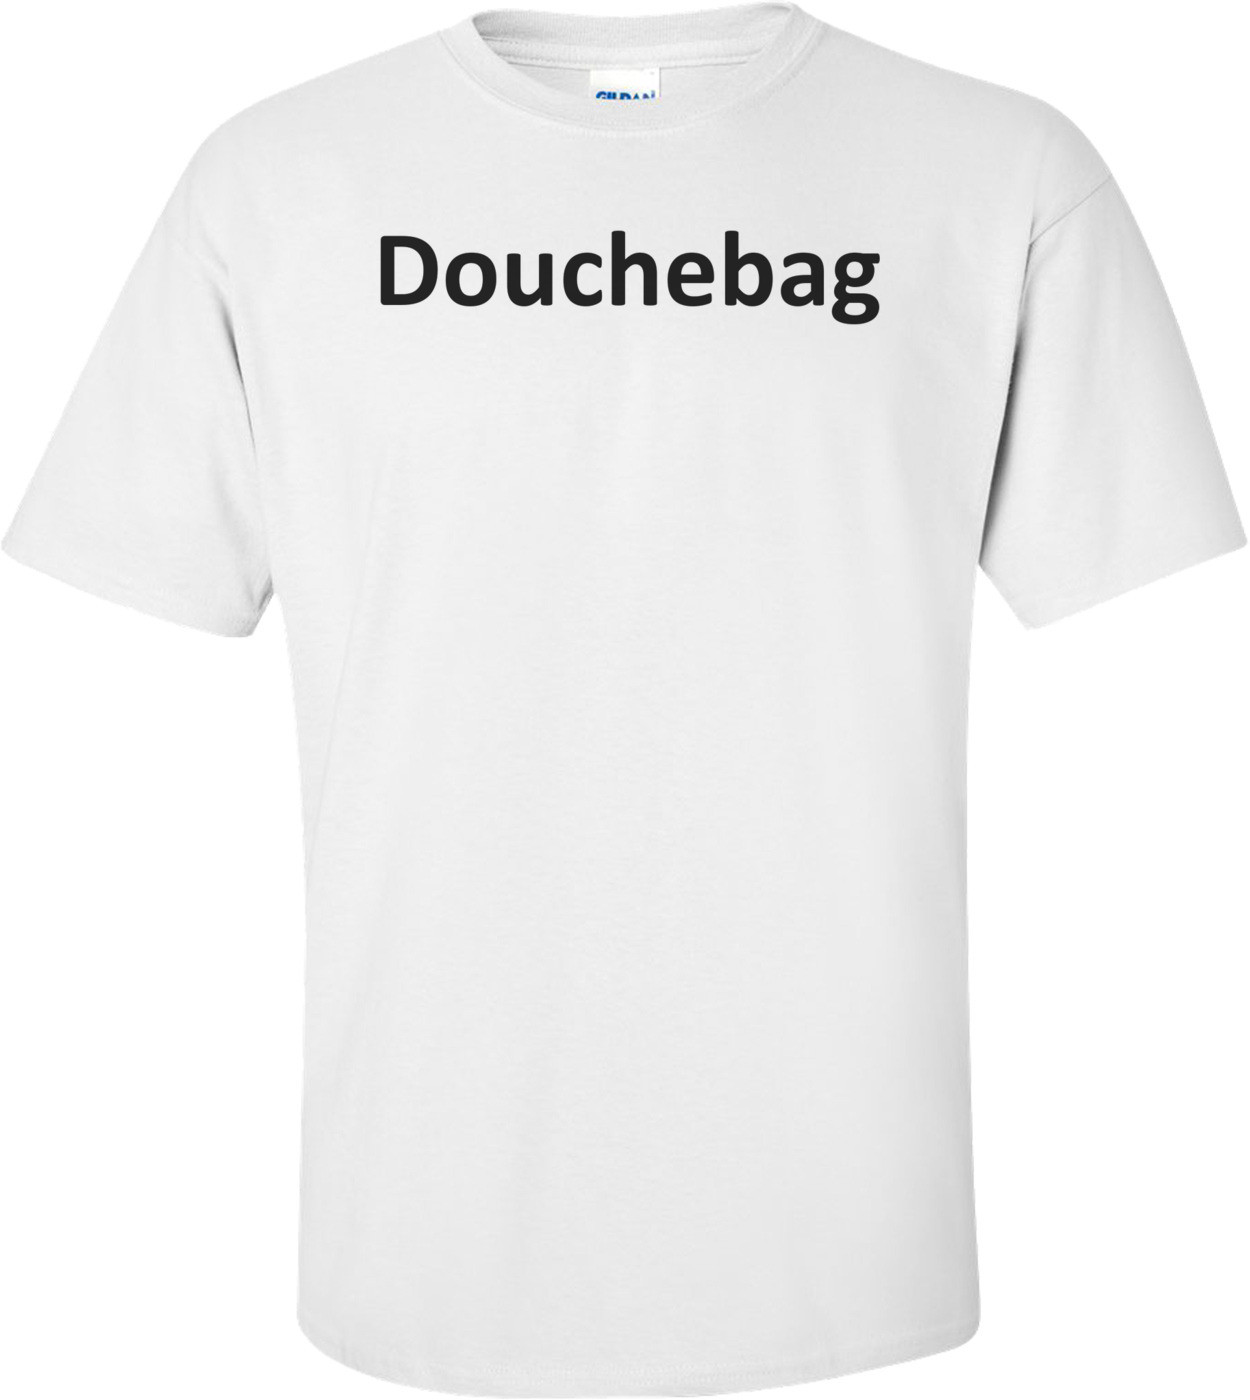 Douchebag T-Shirt